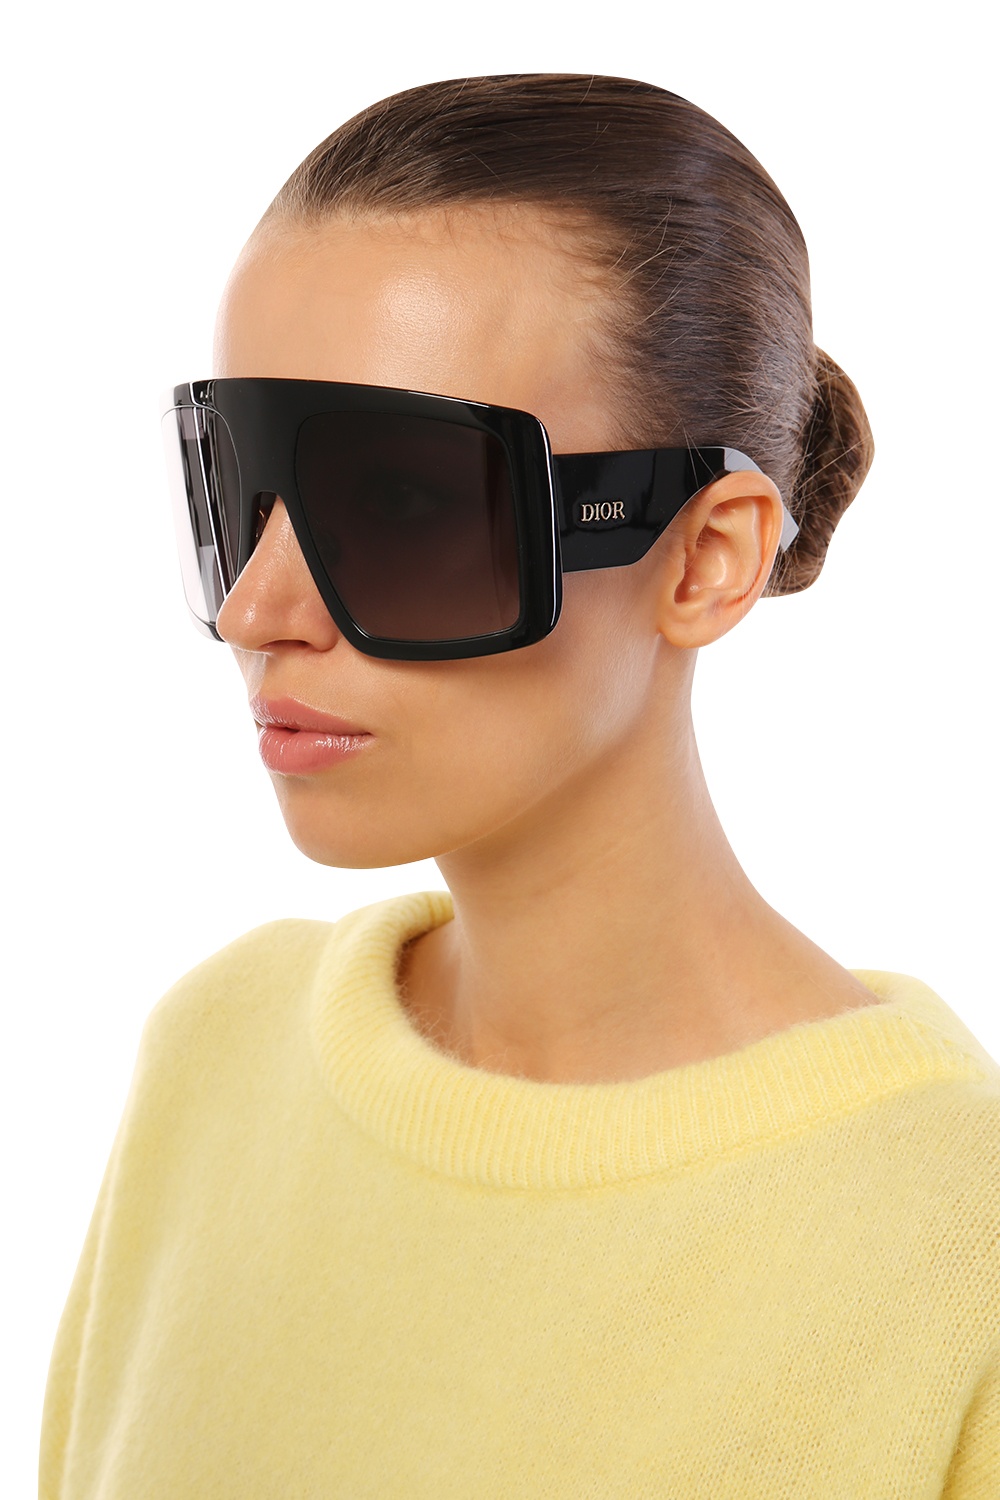 dior so light 1 sunglasses